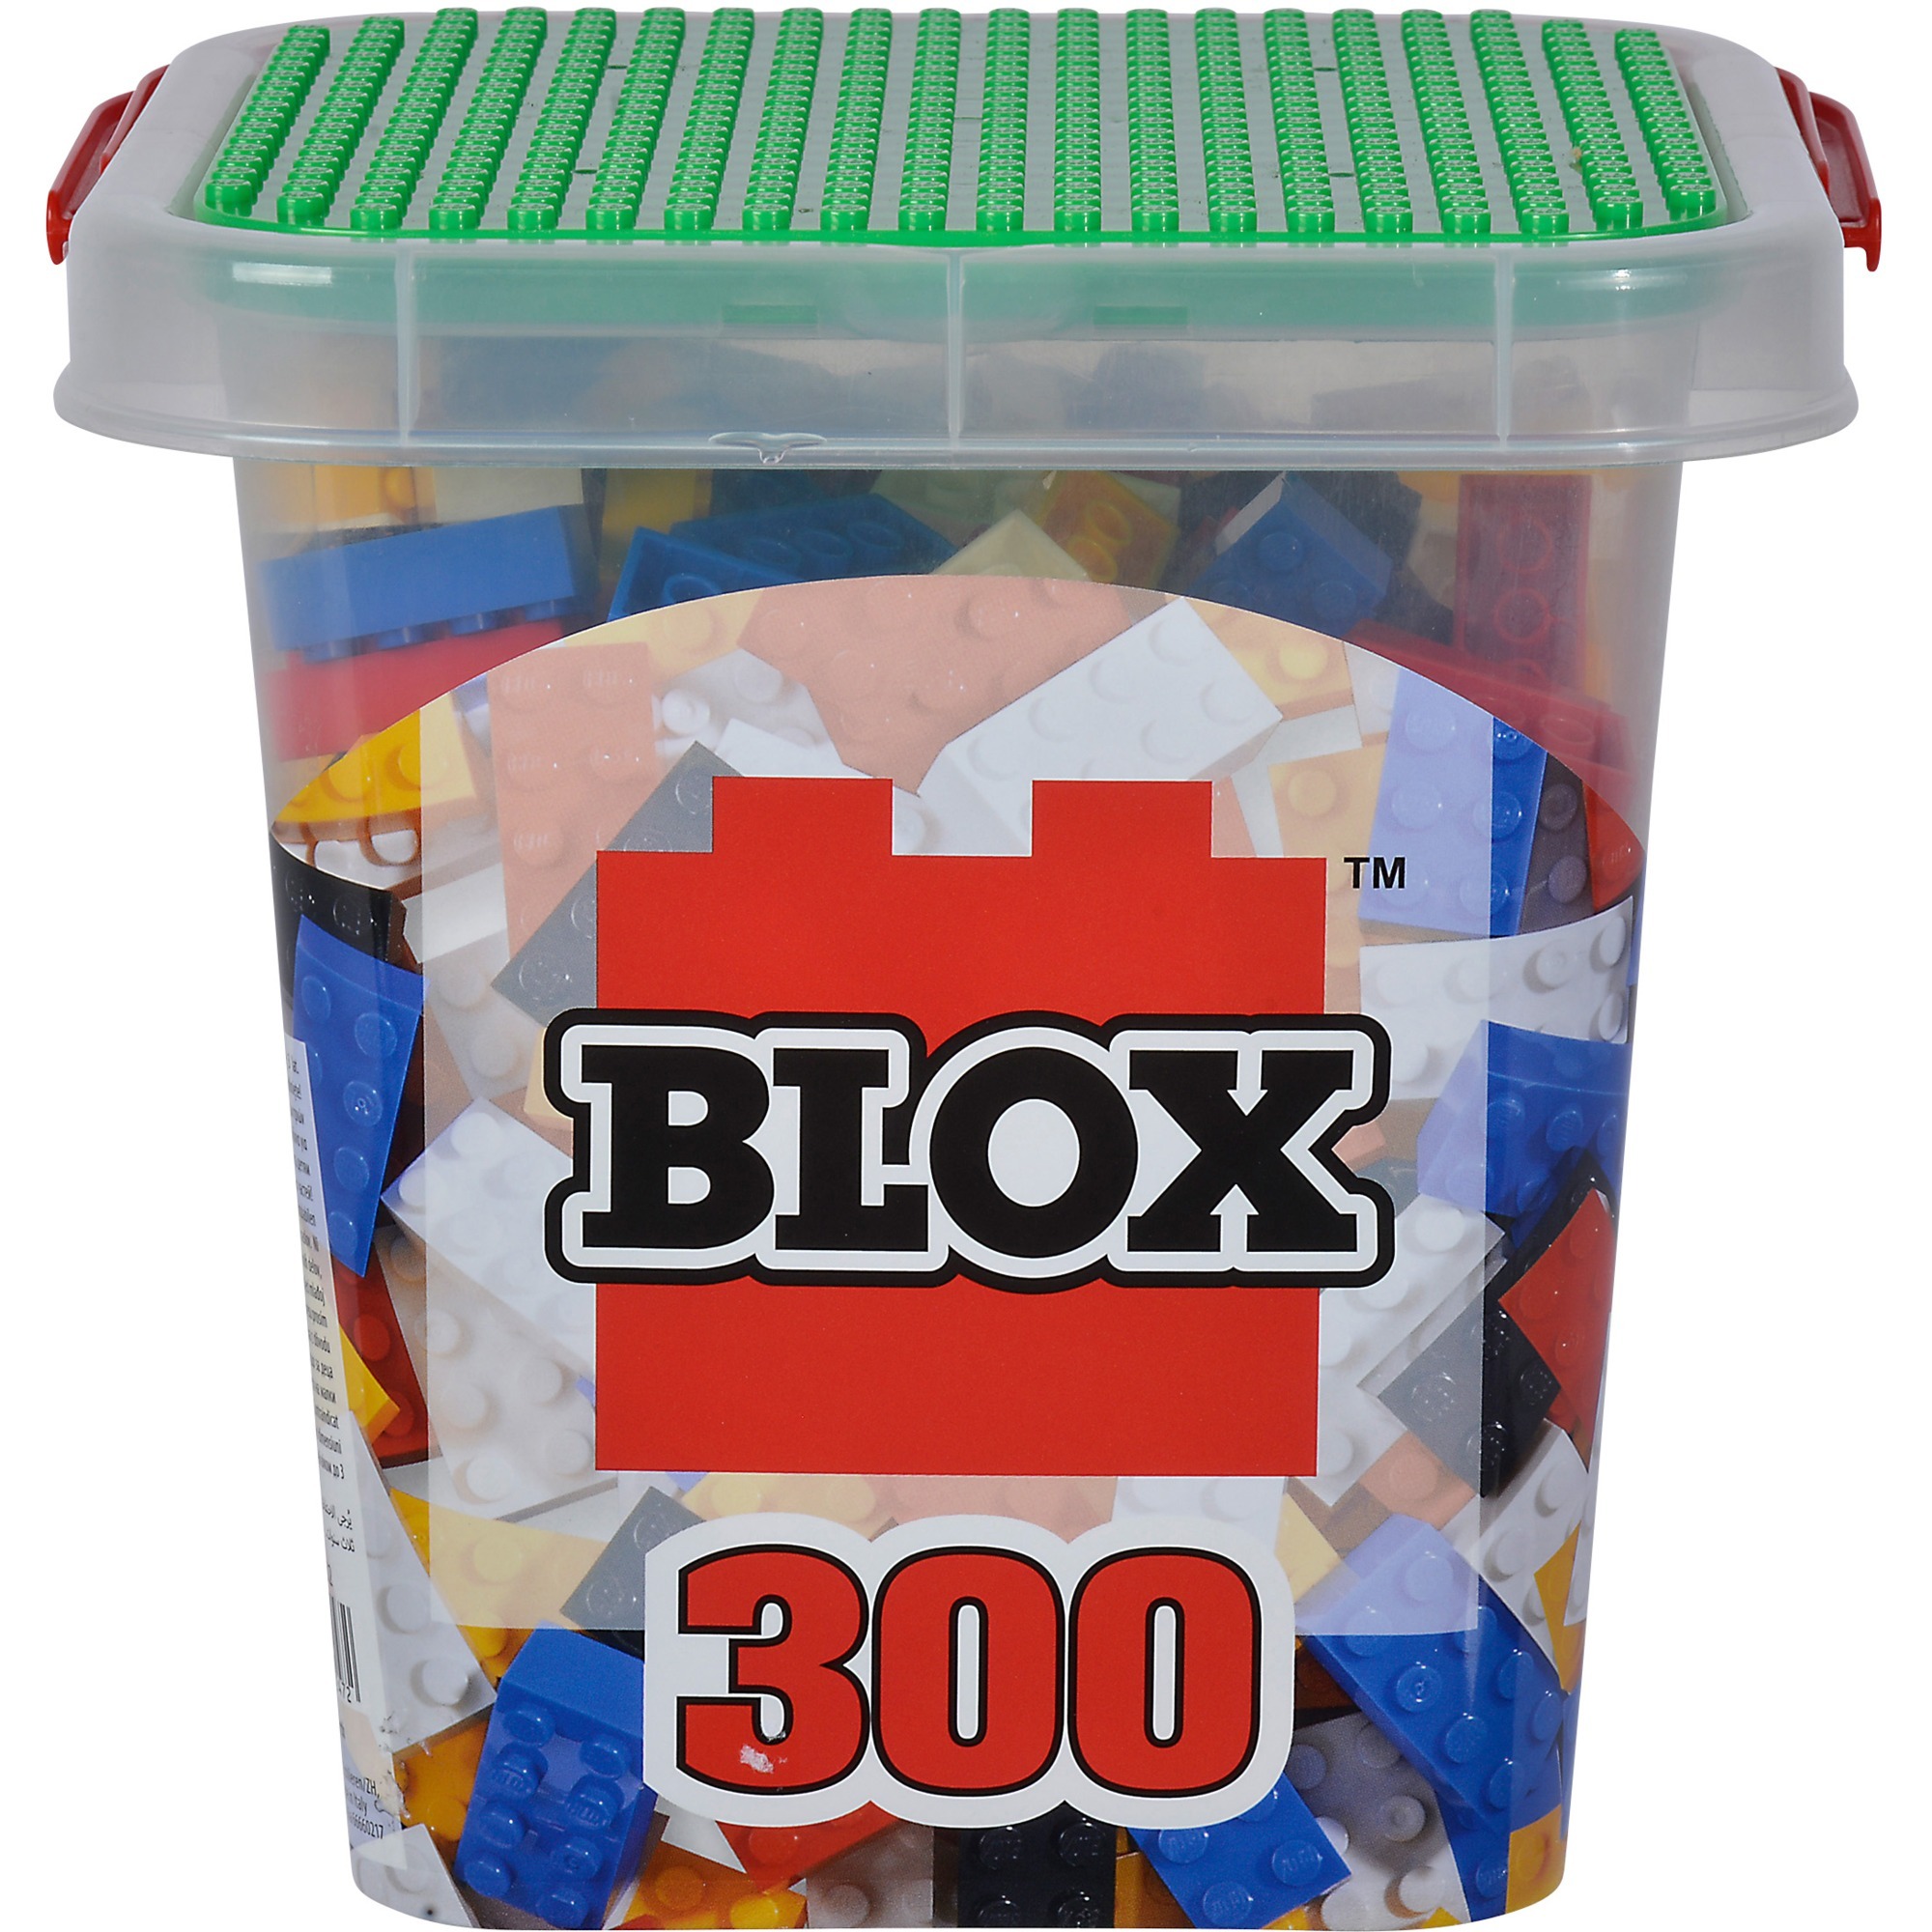 Image of Alternate - Blox Eimer 300 8er Steine, Konstruktionsspielzeug online einkaufen bei Alternate